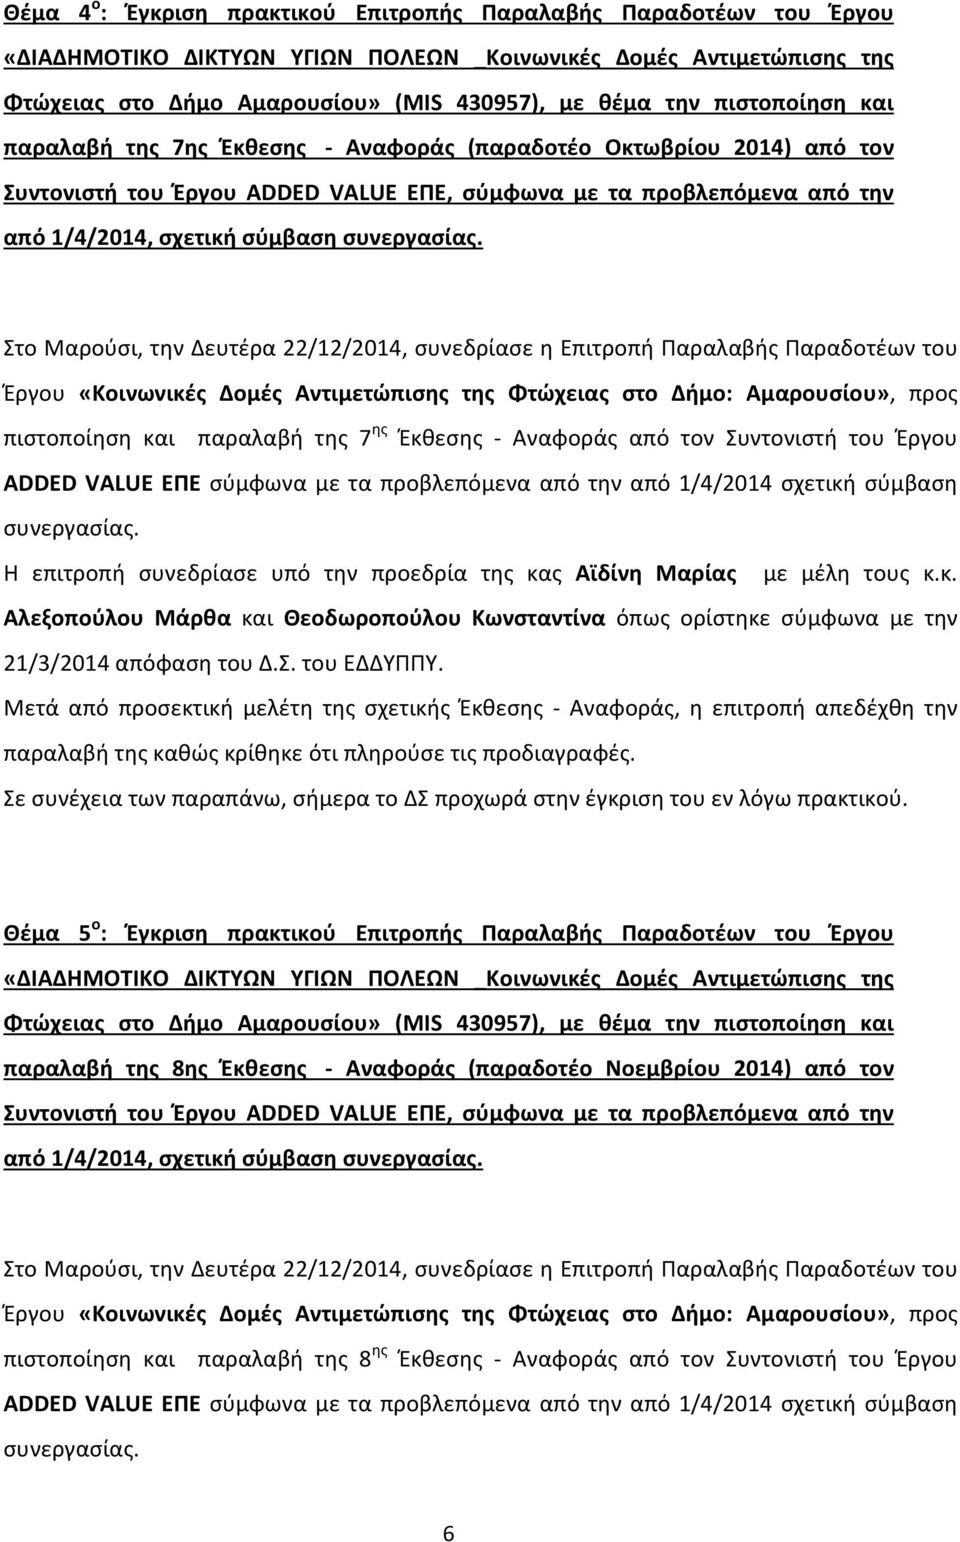 Στο Μαρούσι, την Δευτέρα 22/12/2014, συνεδρίασε η Επιτροπή Παραλαβής Παραδοτέων του πιστοποίηση και παραλαβή της 7 ης Έκθεσης - Αναφοράς από τον Συντονιστή του Έργου ADDED VALUE ΕΠΕ σύμφωνα με τα